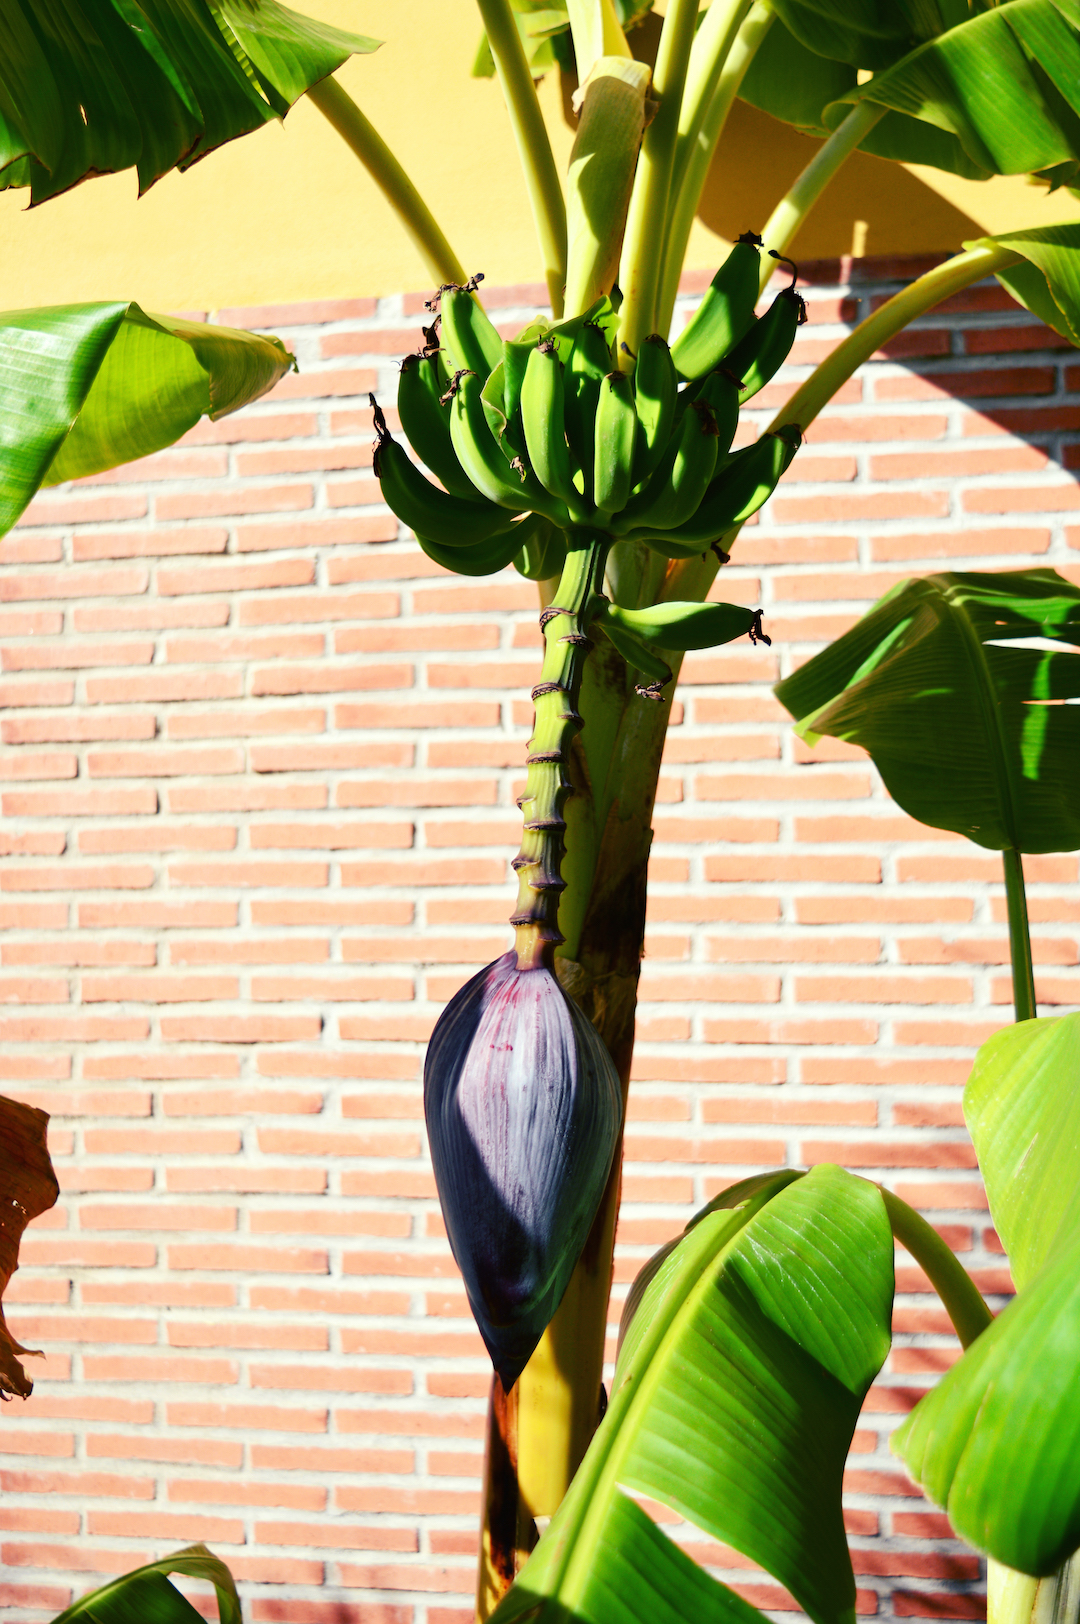 Spain-holiday-andalusia-banana-tree